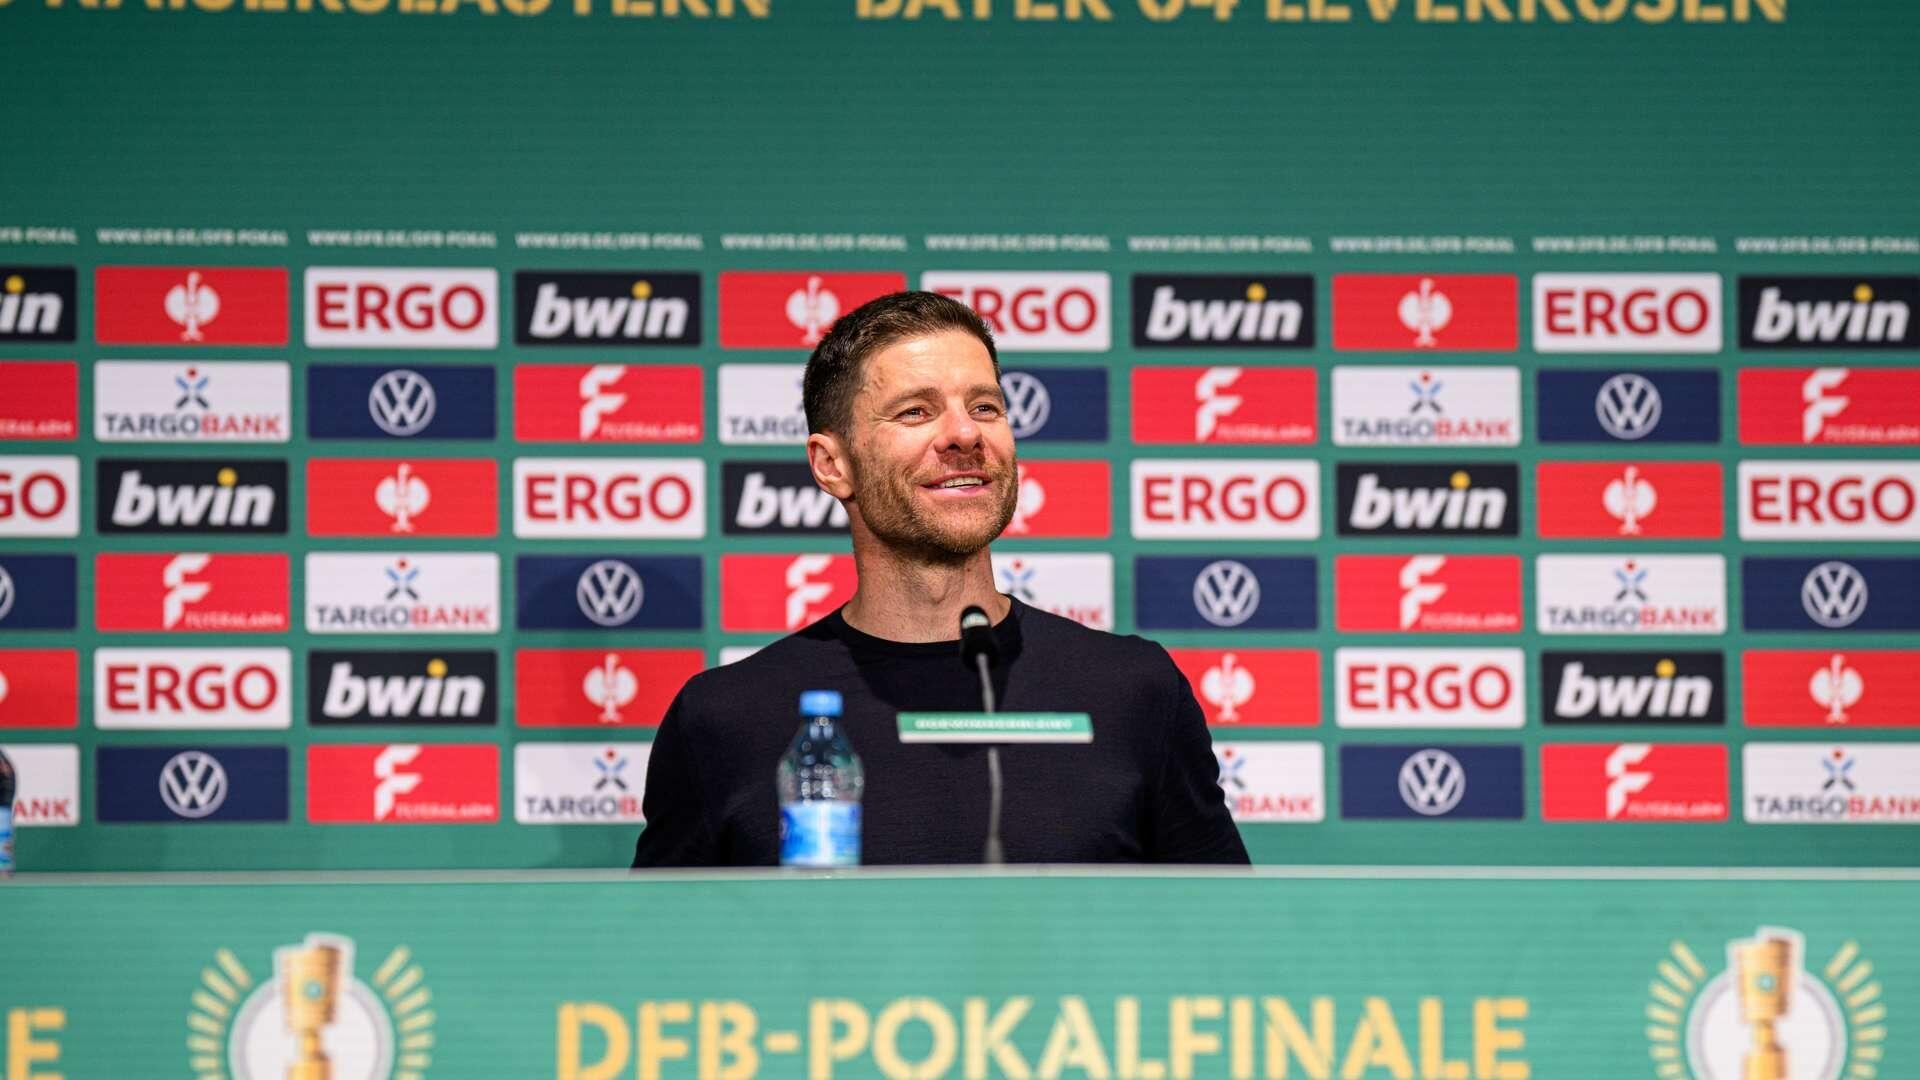 Die finale Pressekonferenz der Saison | DFB-Pokalfinale